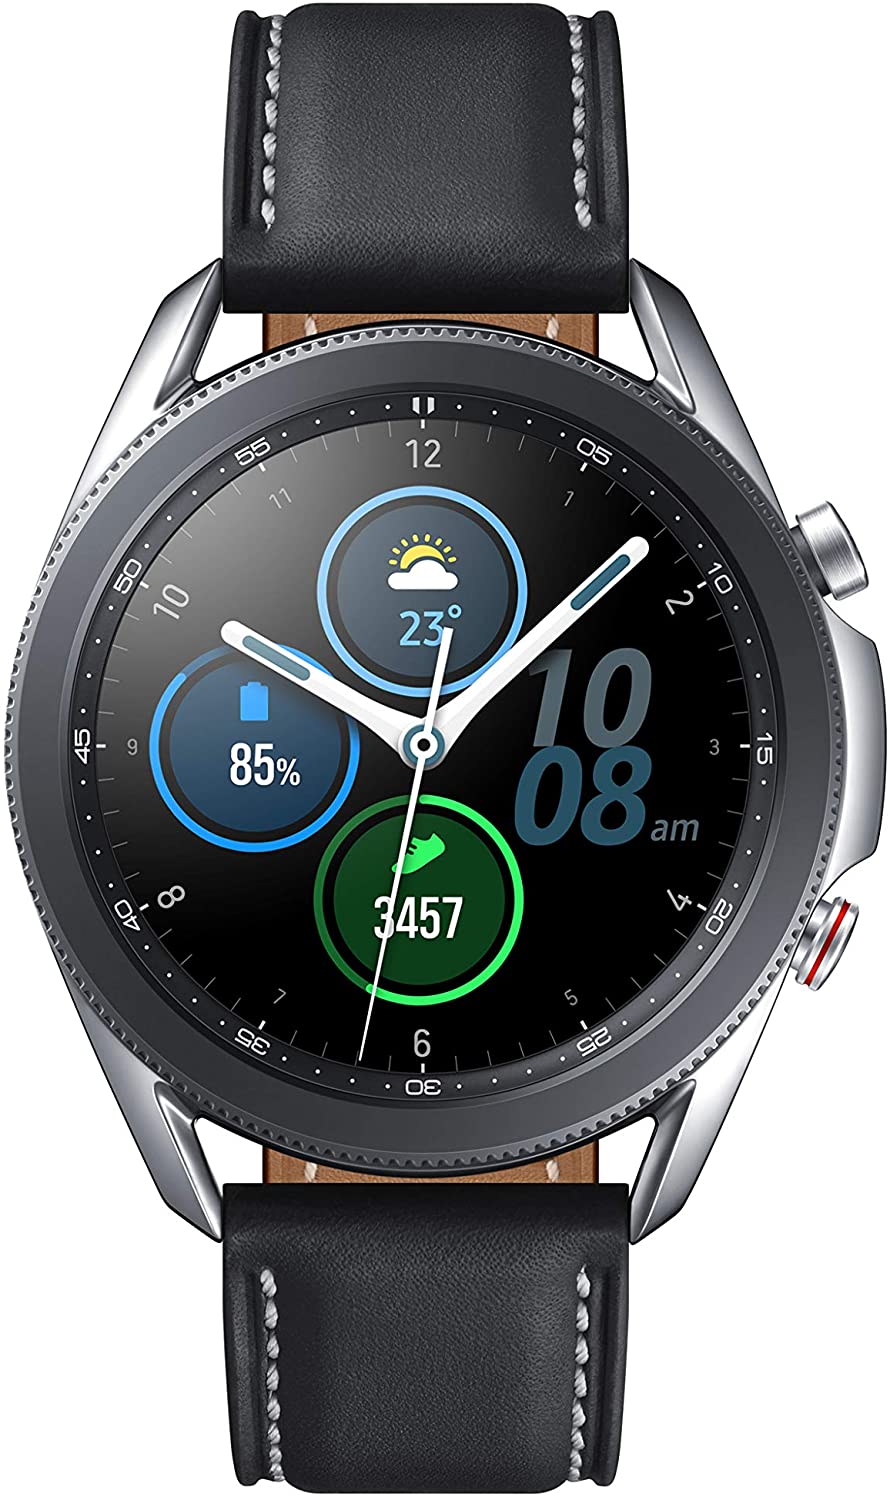 Samsung Galaxy Watch 3 (45mm, GPS, Bluetooth, Unlocked LTE) - Mystic Silver (Refurbished)